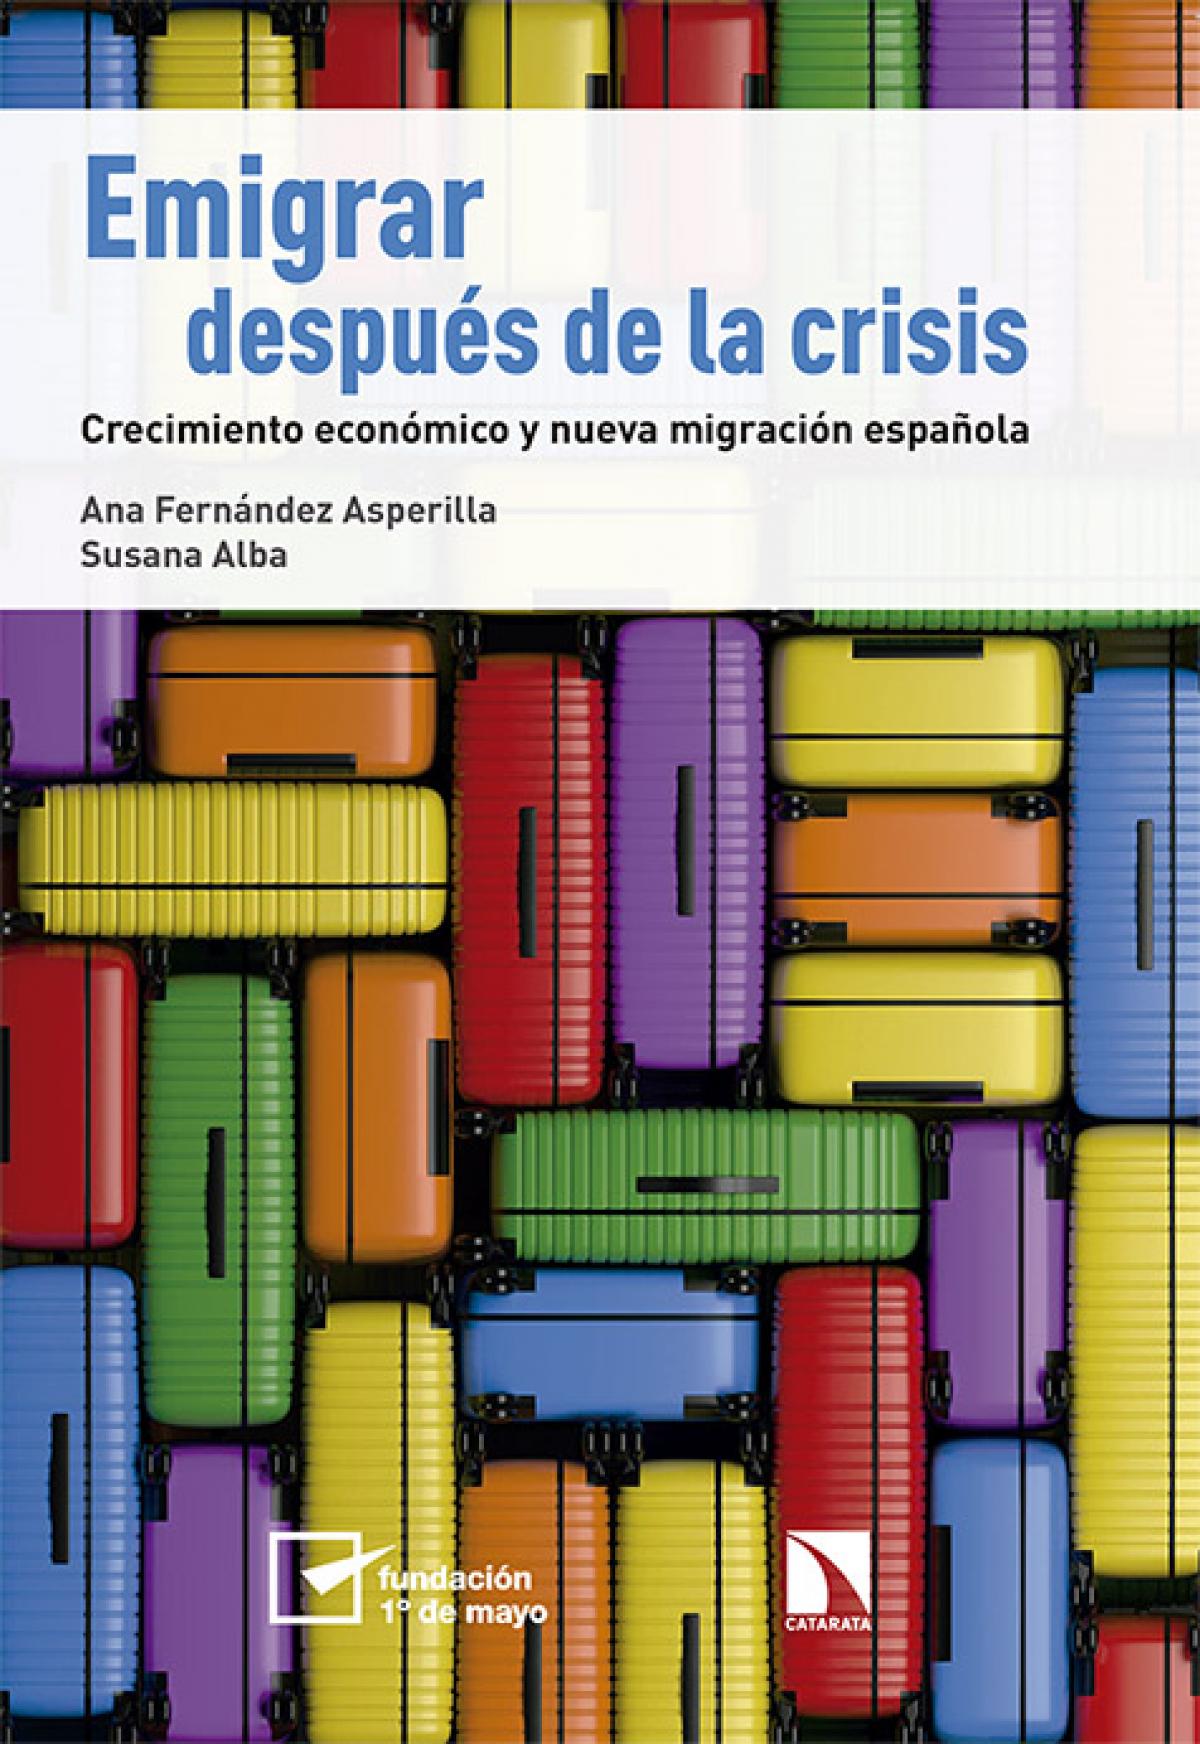 Portada libro "Emigrar despus de la crisis"